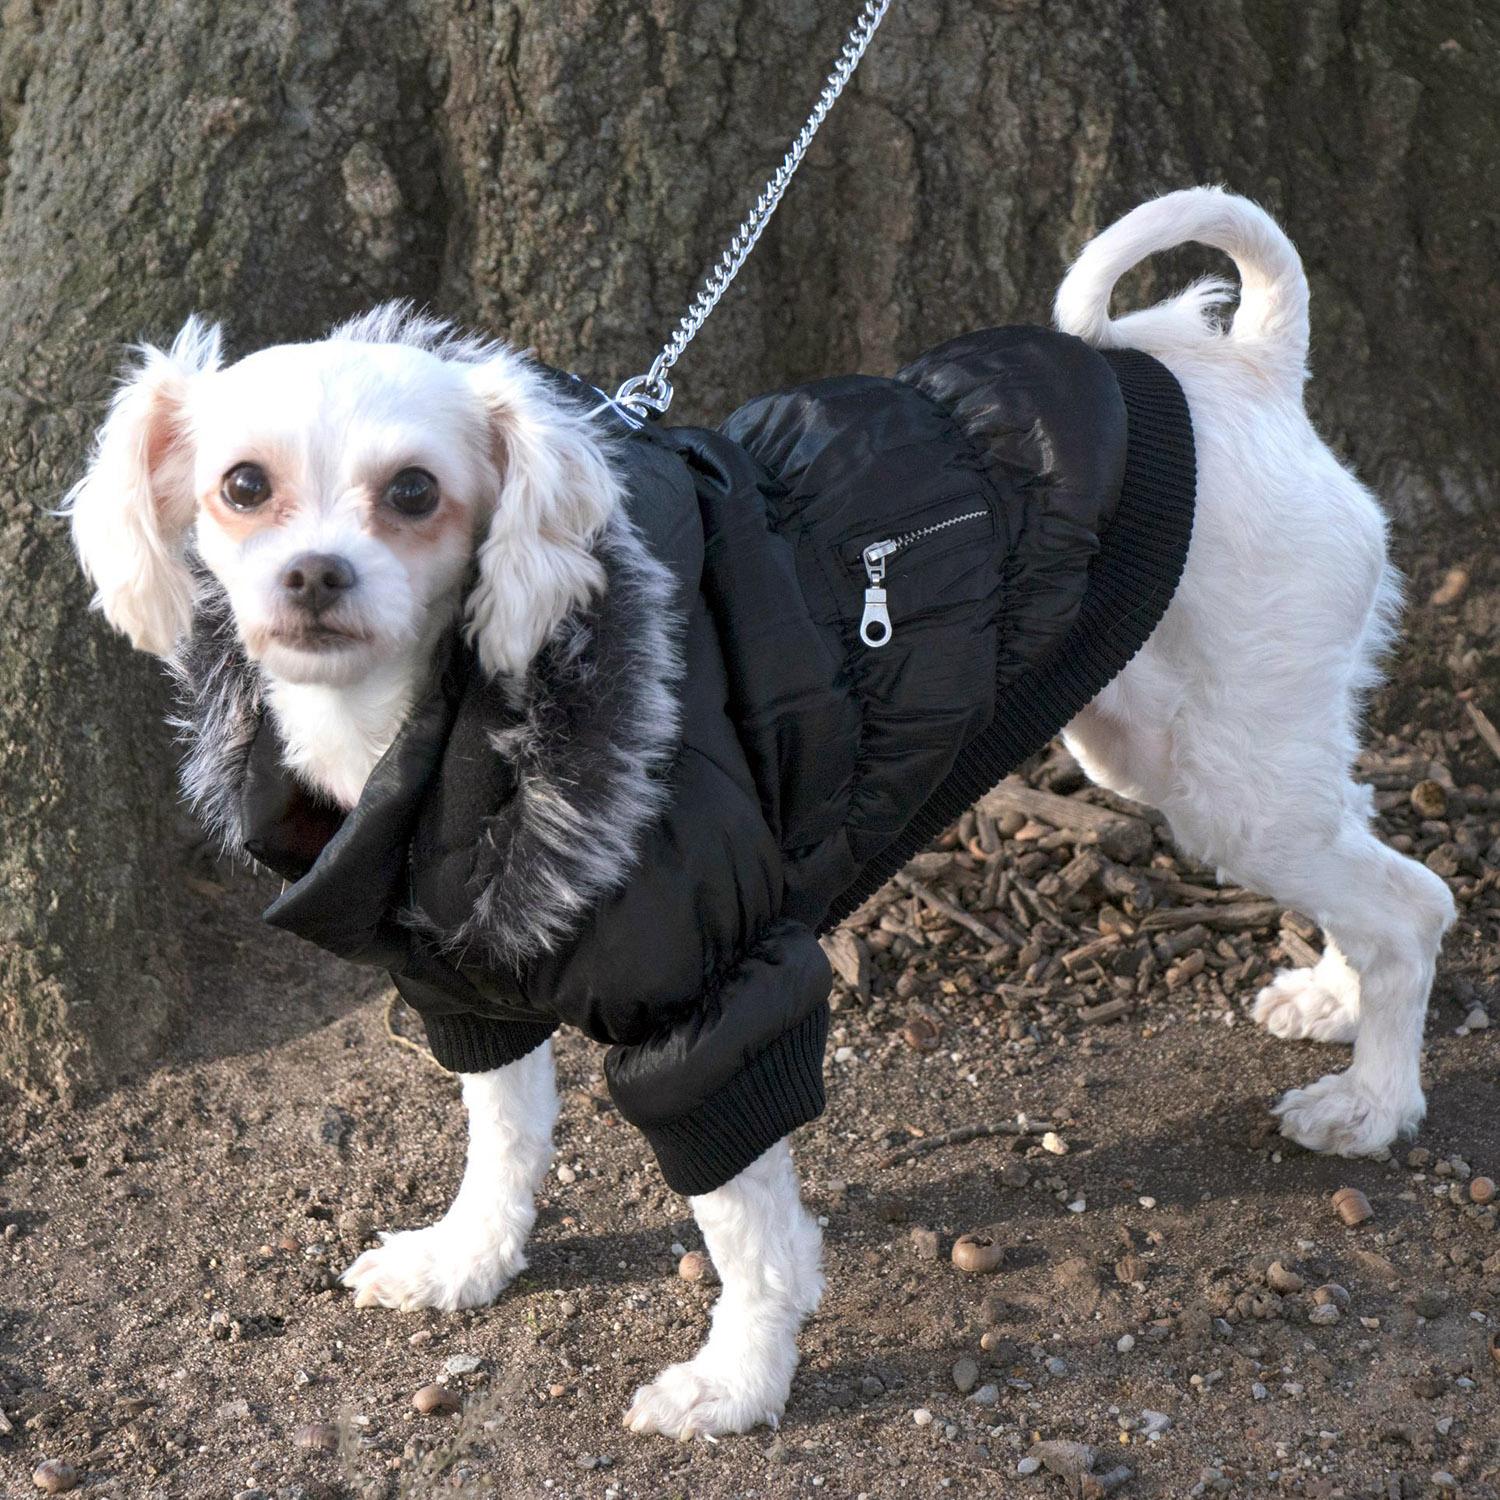 baxterboo dog coats